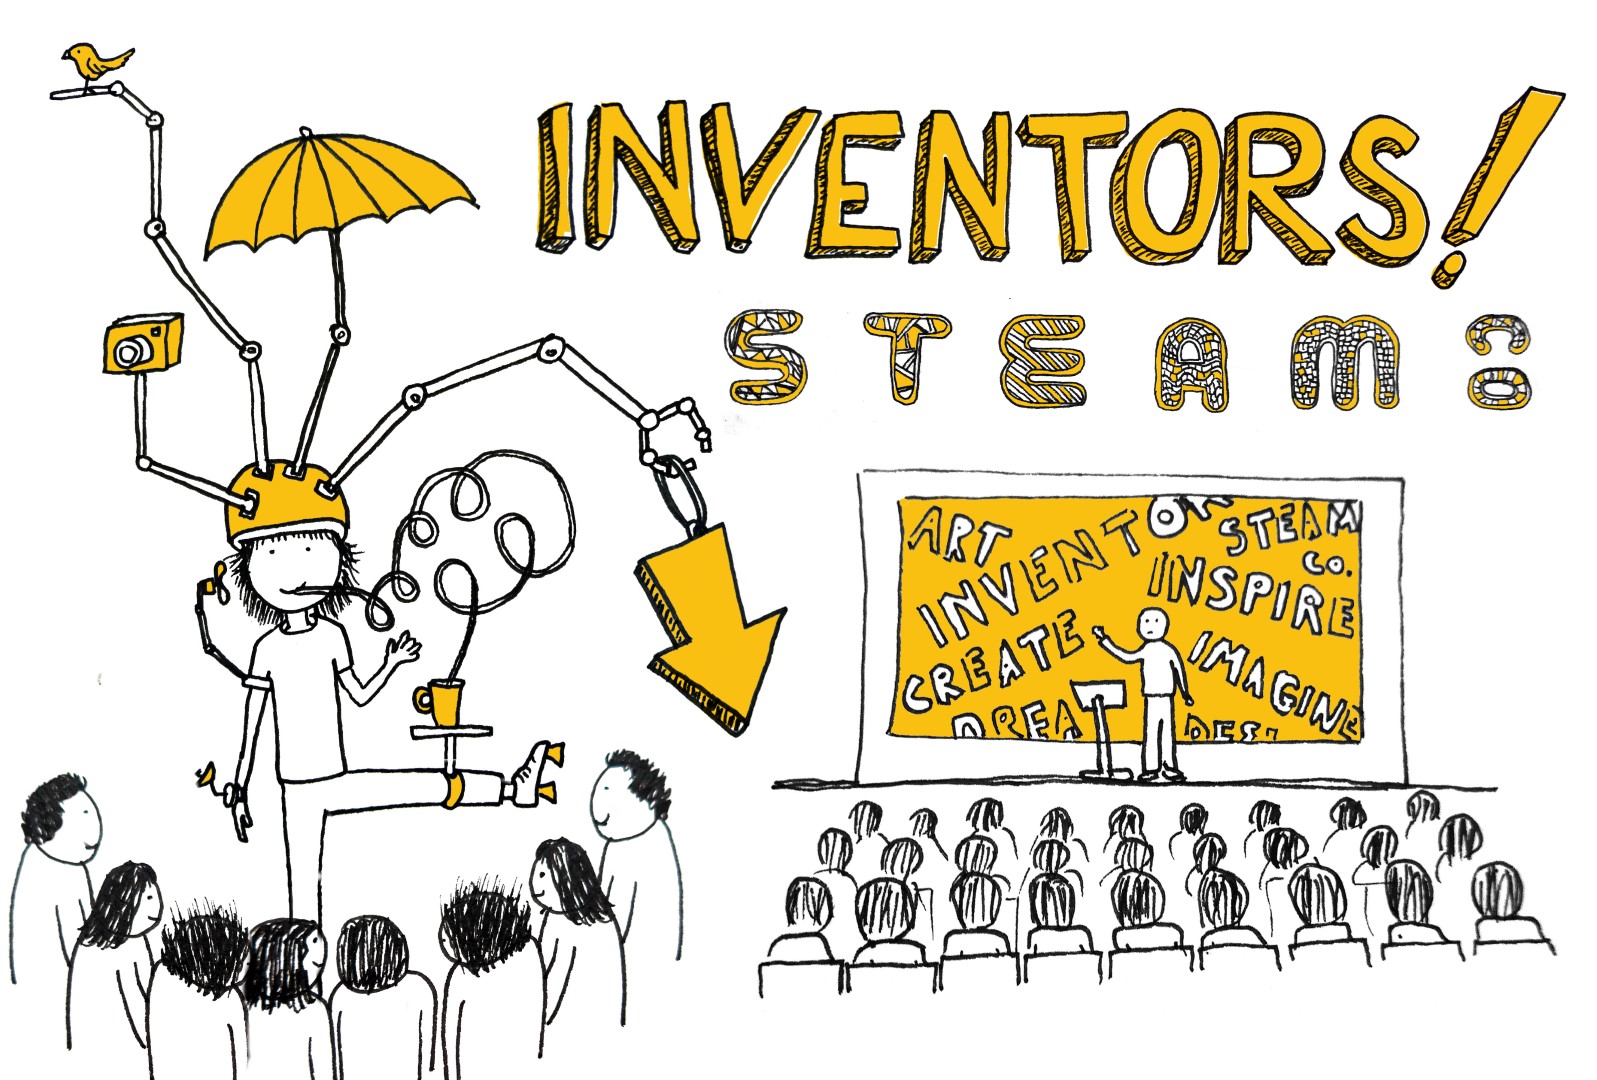 Inventors STEAM  Co Day image v2 (Large).jpg